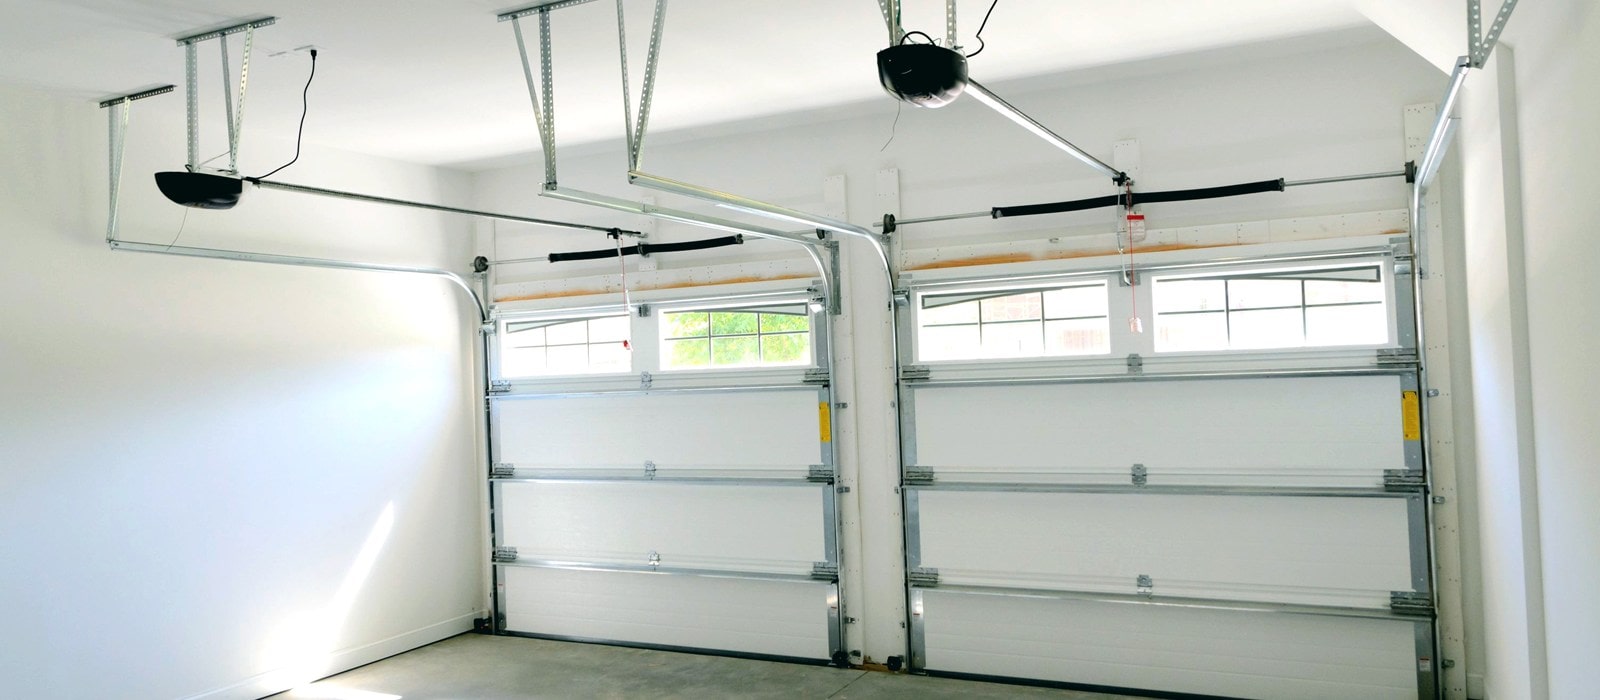 Garage-Door-Repair-Service-1